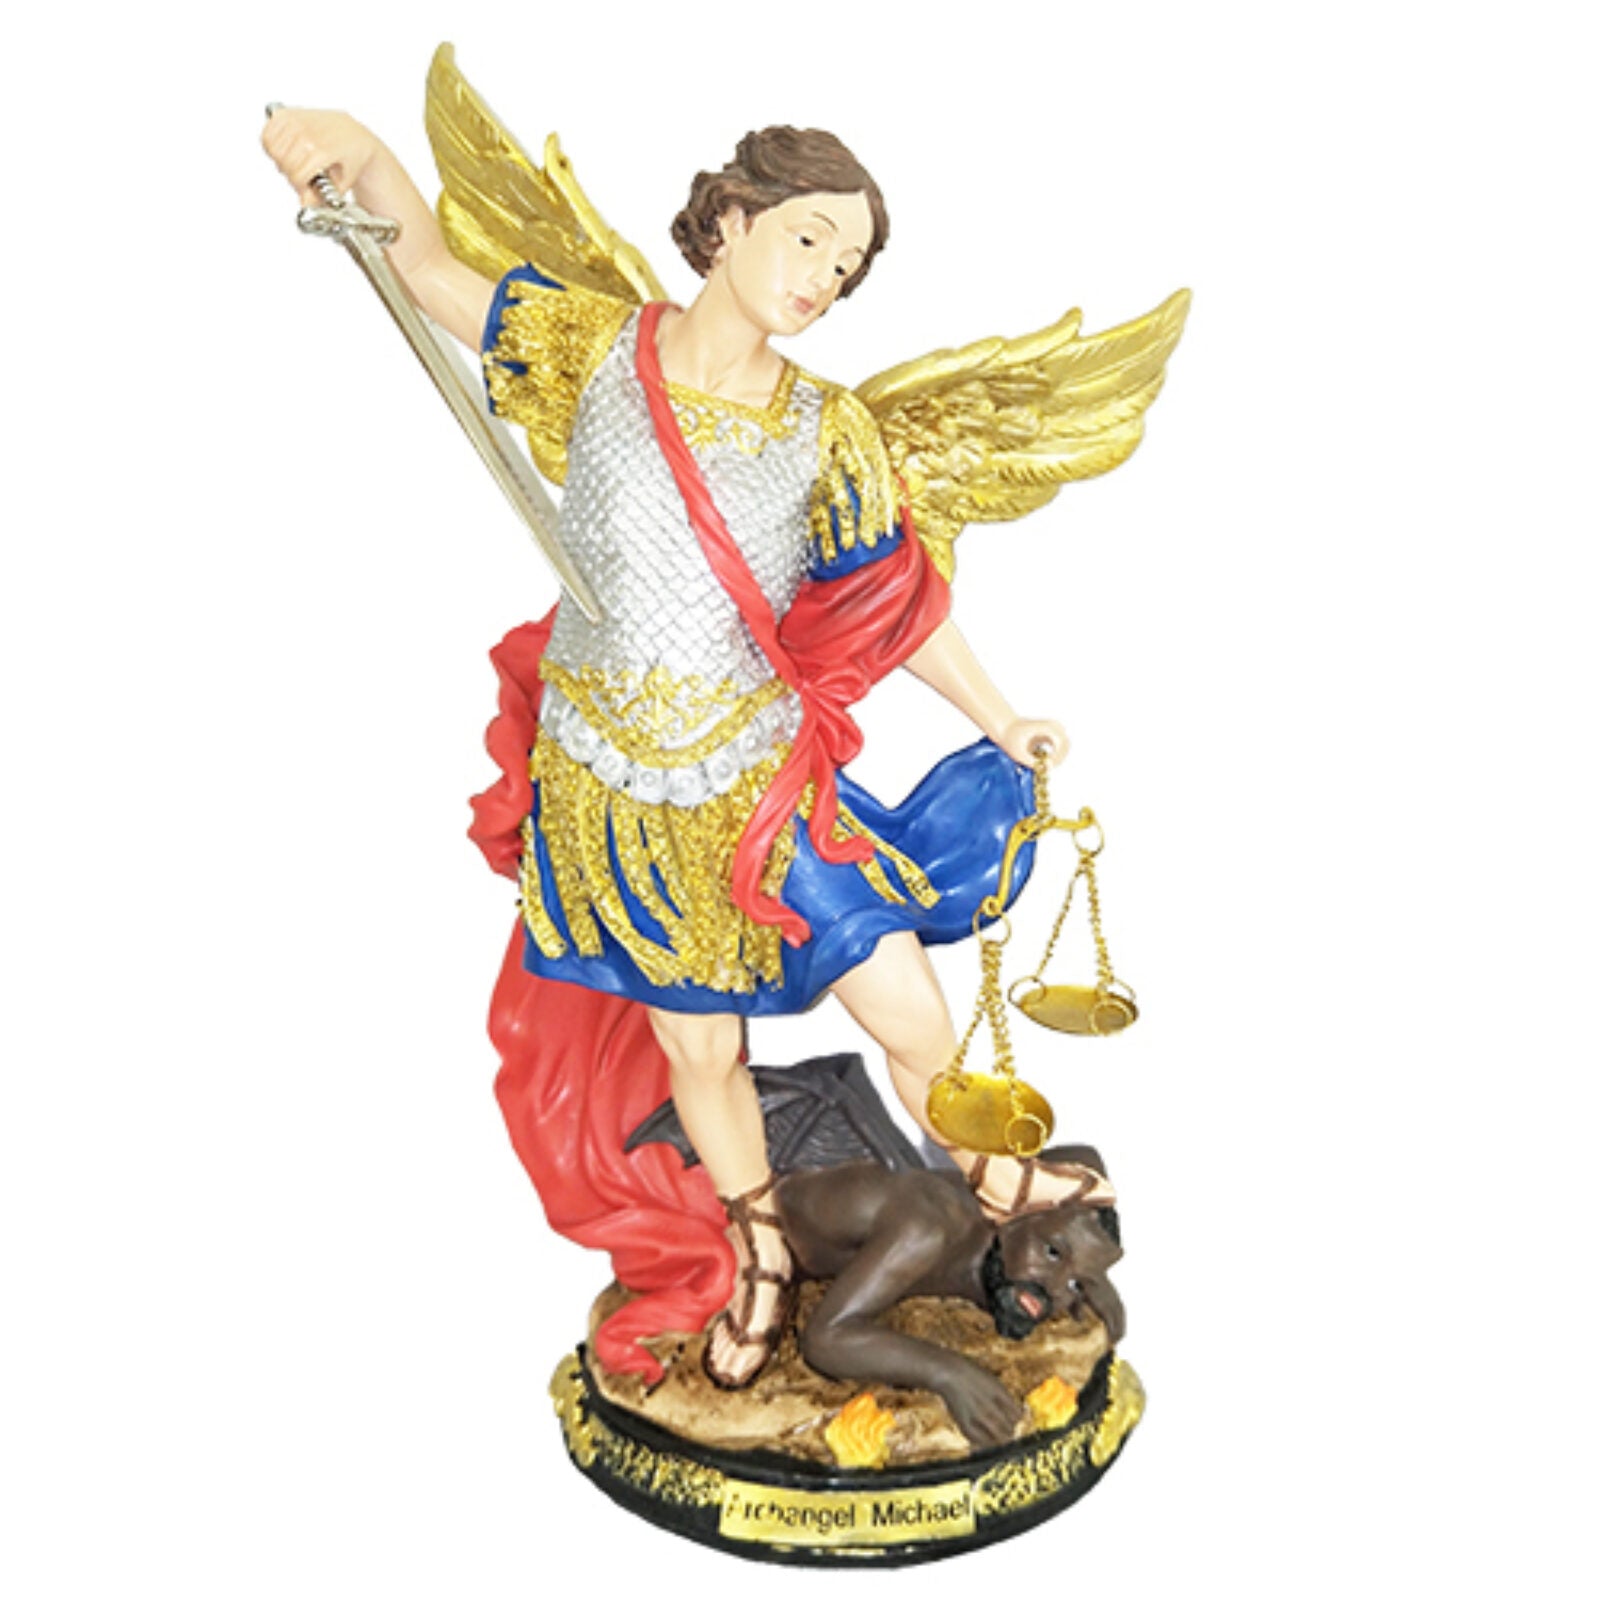 Saint Michael (San Miguel) Statue 12"